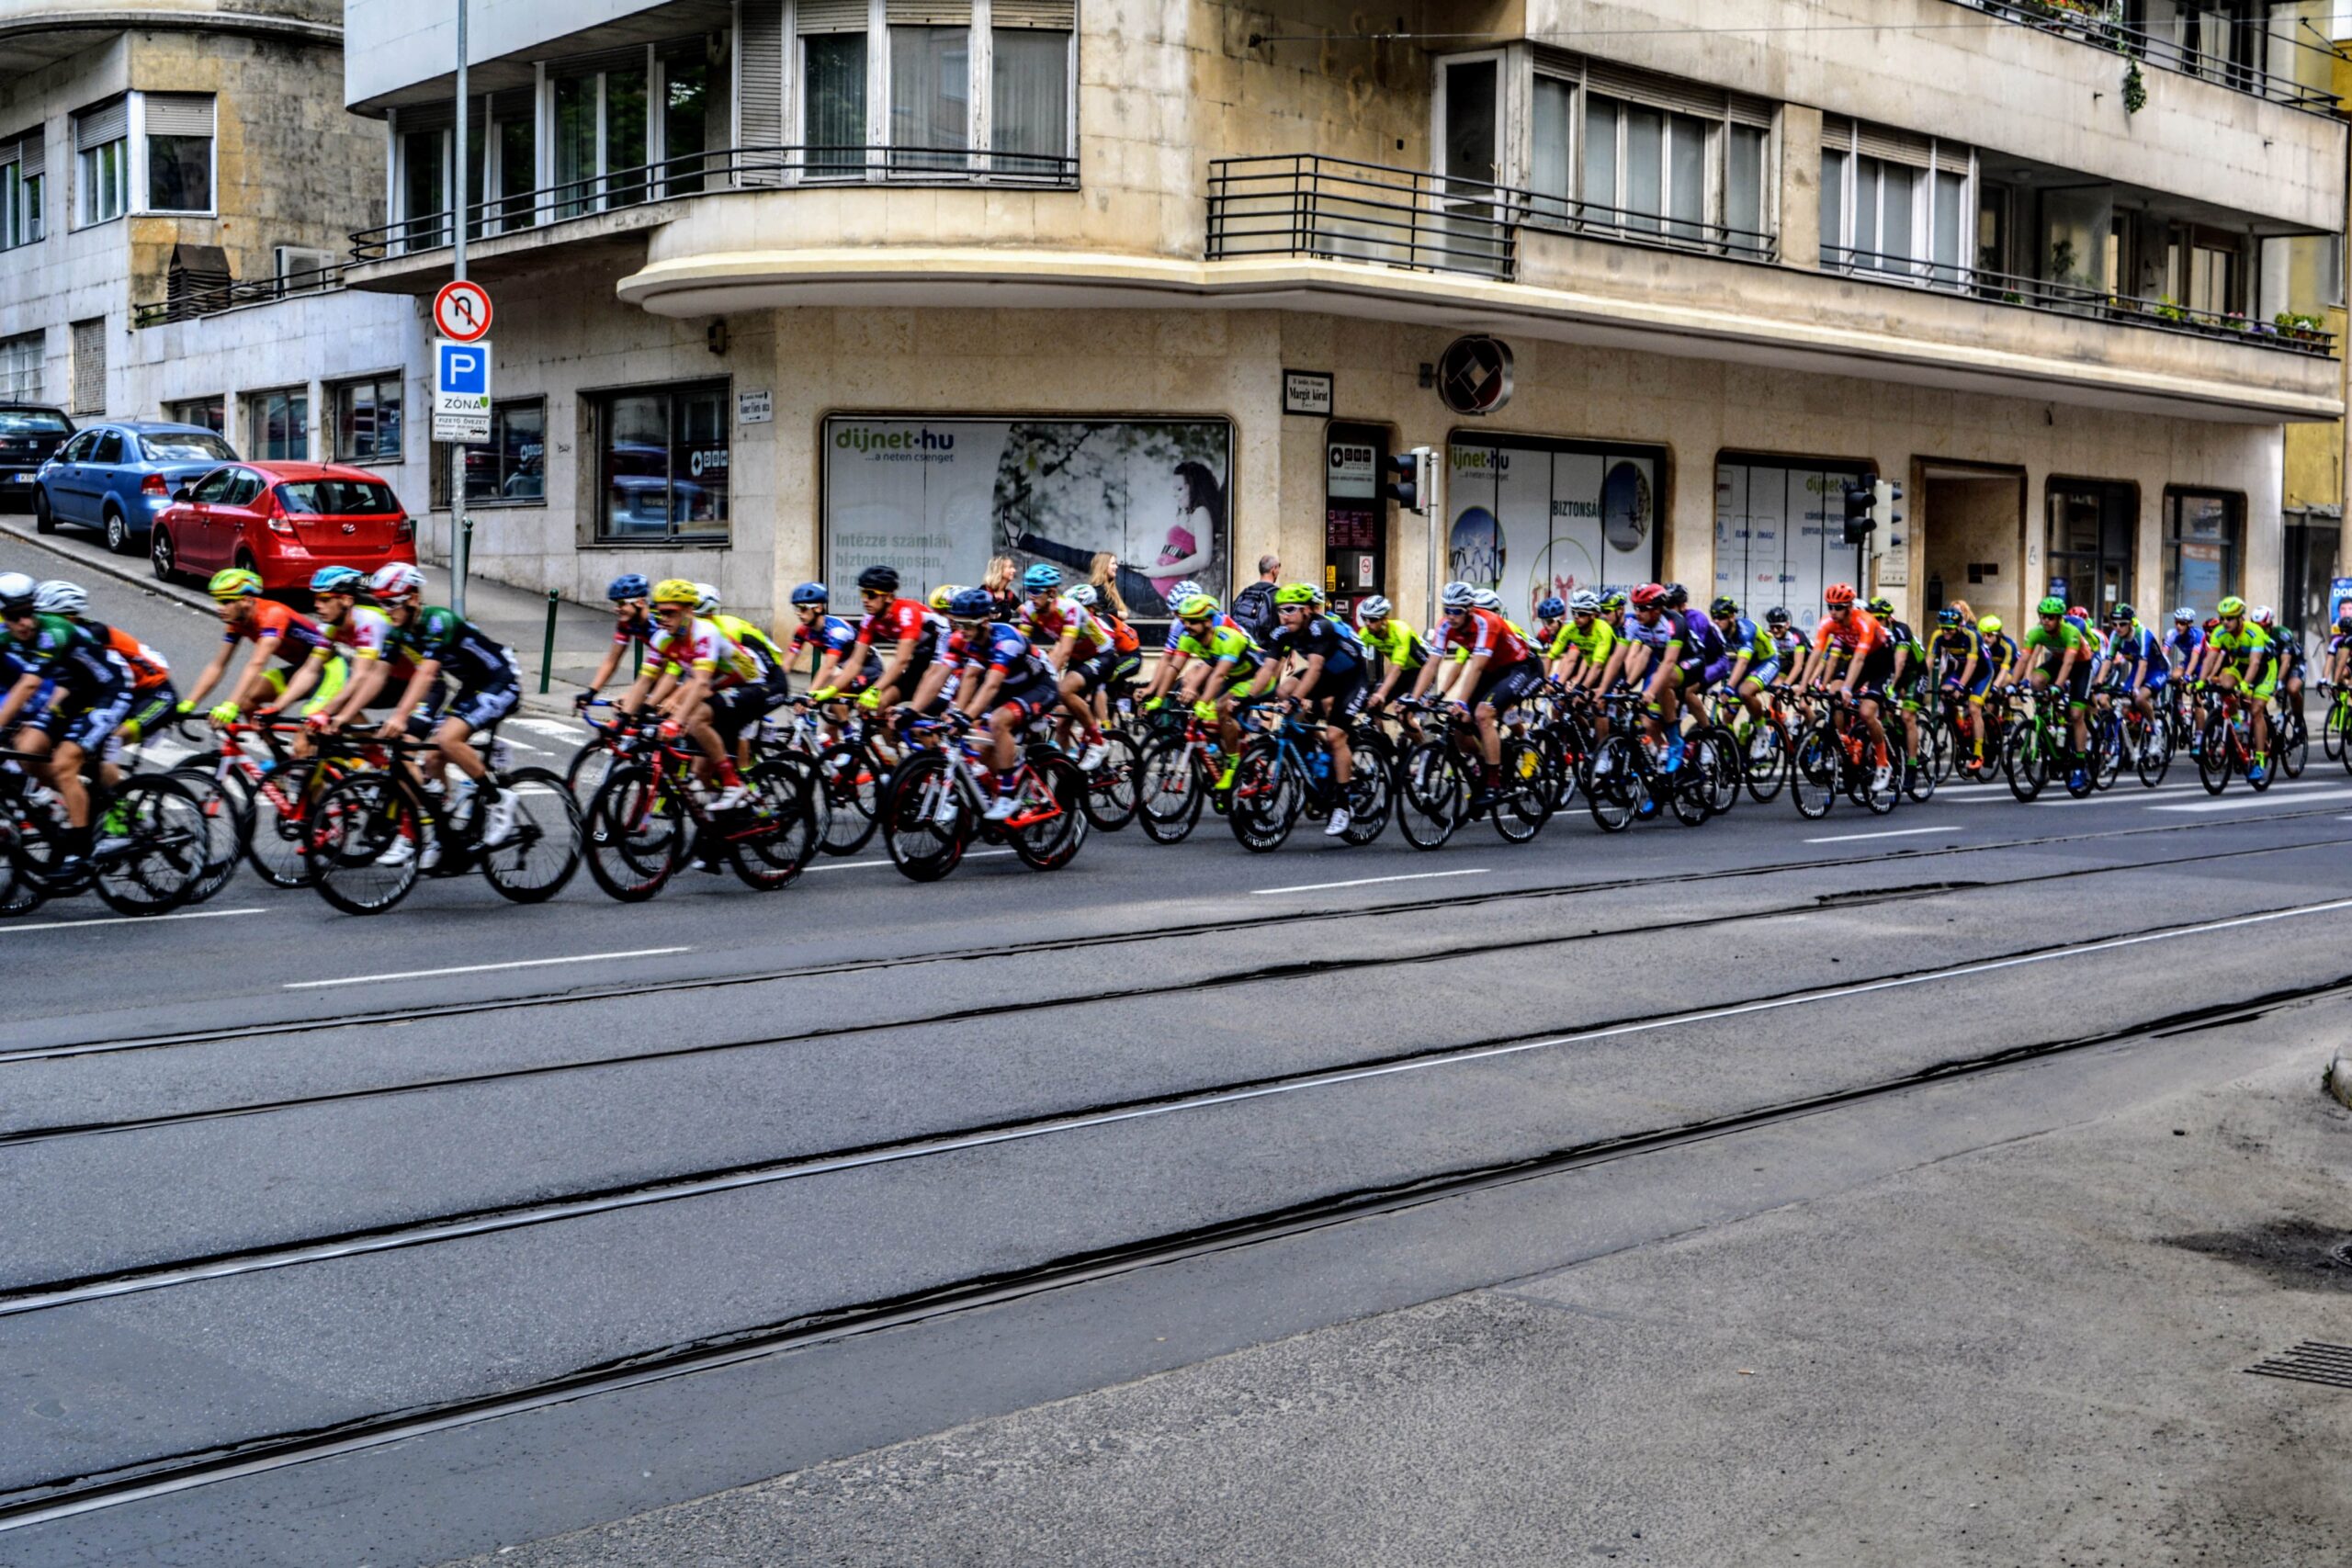 “A Lánchídhoz hasonlóan a biciklisávokról is a budapestieknek kellene döntenie”